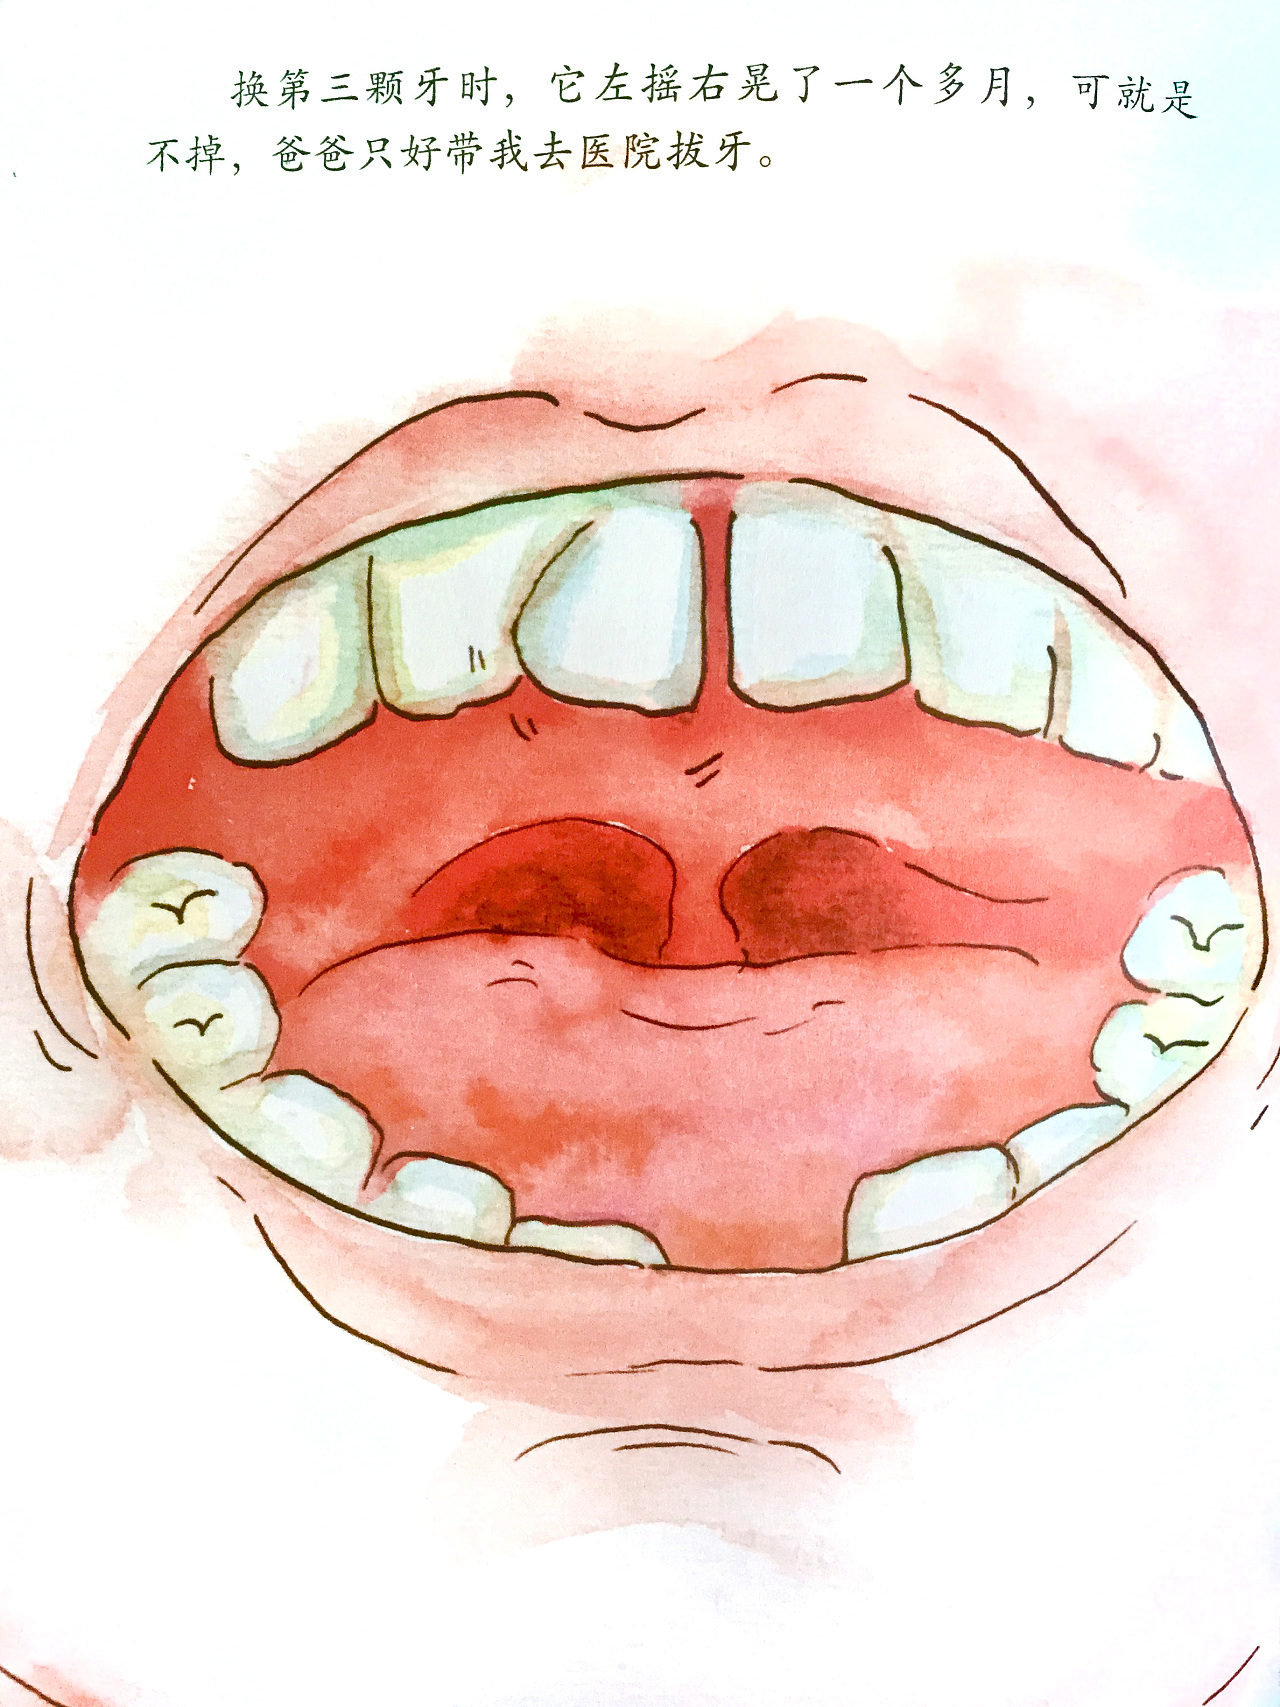 牙齿不齐矫正的黄金年龄 苏州牙齿矫正费用多少 - 知乎